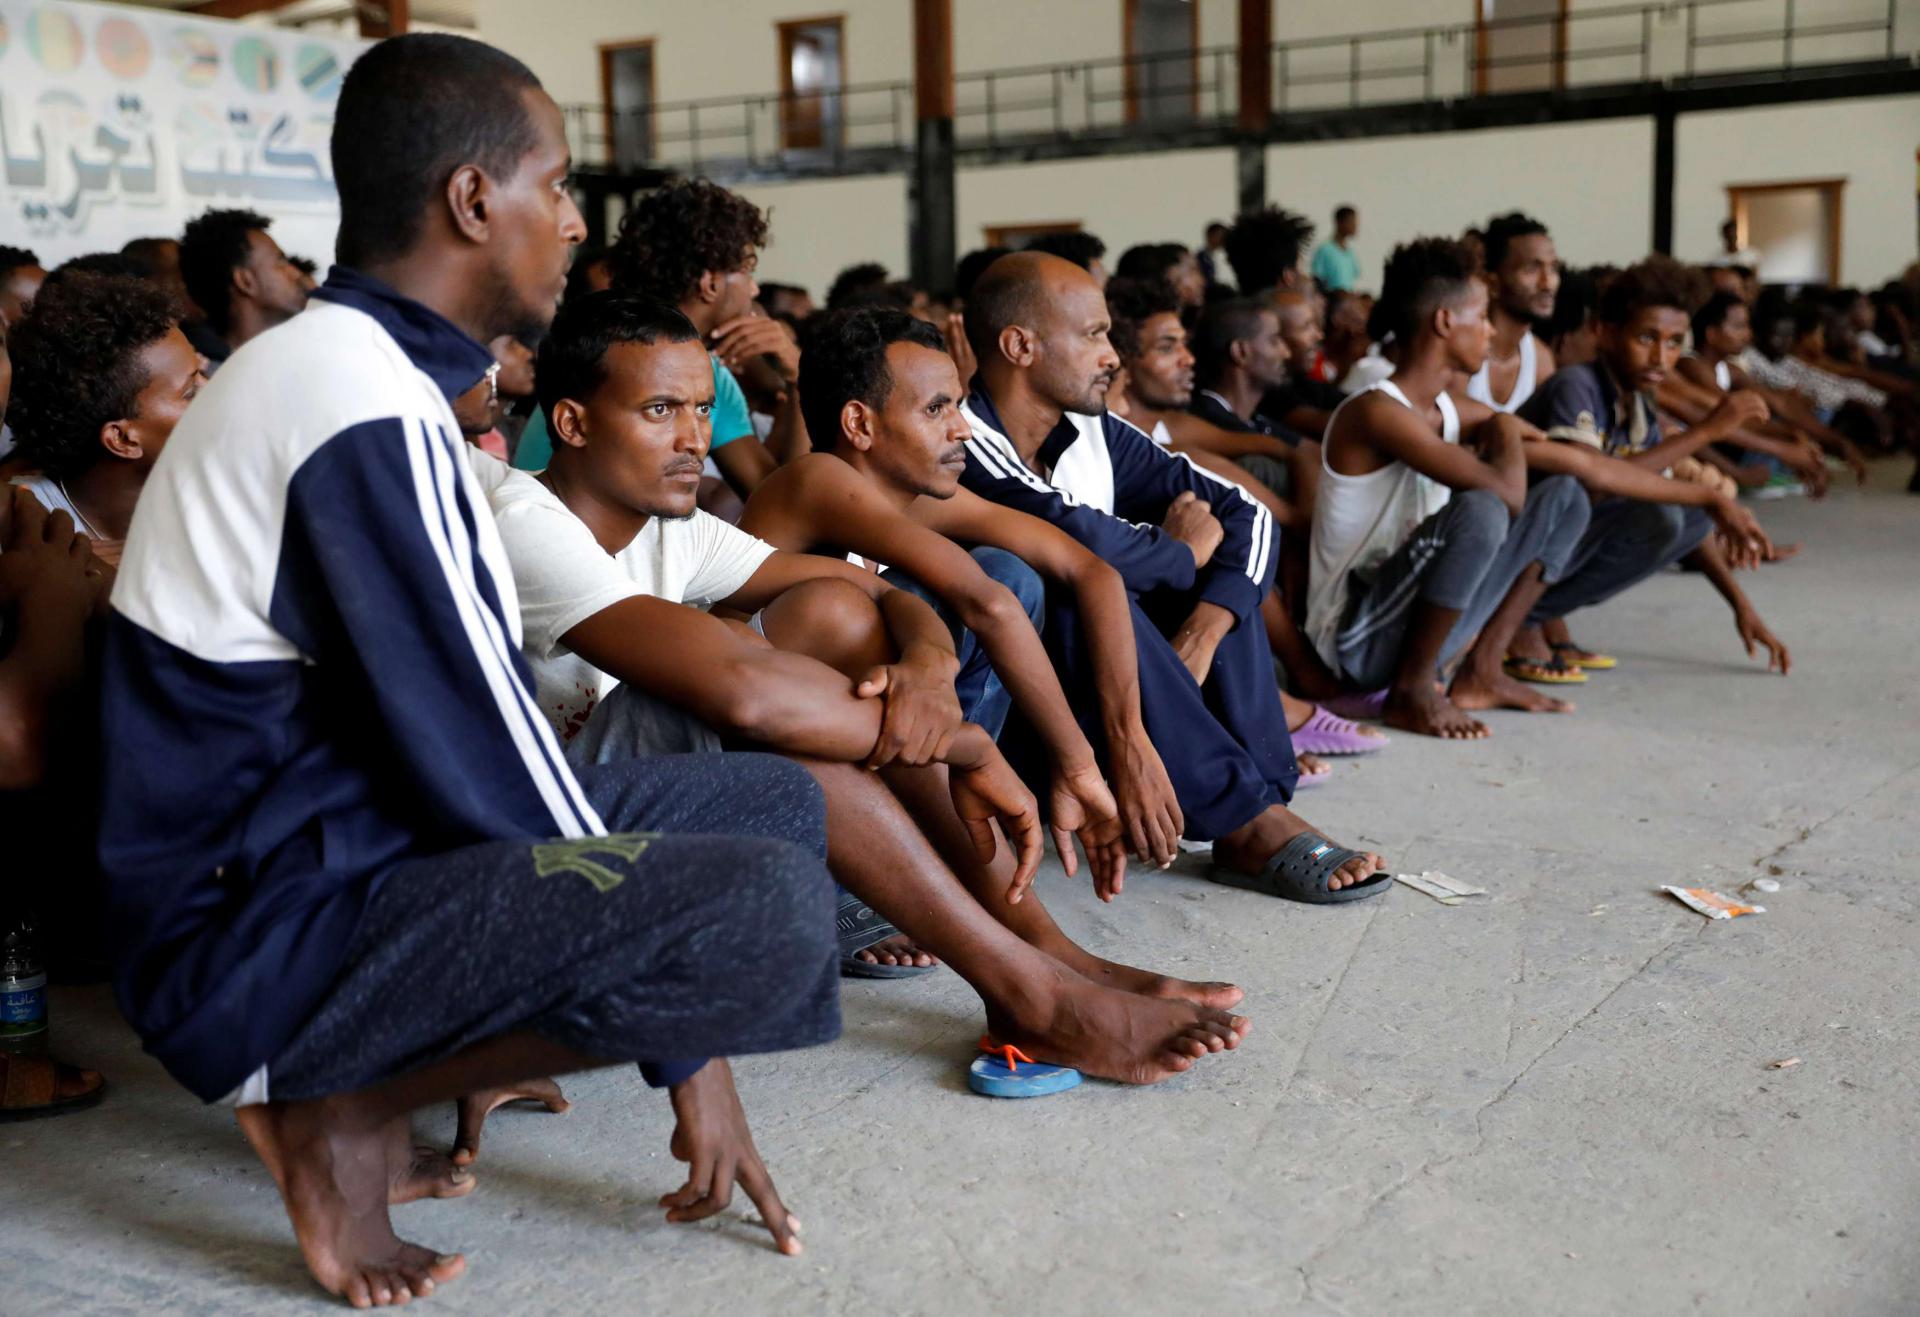 انتقادات بشأن إساءة معاملة المهاجرين في ليبيا